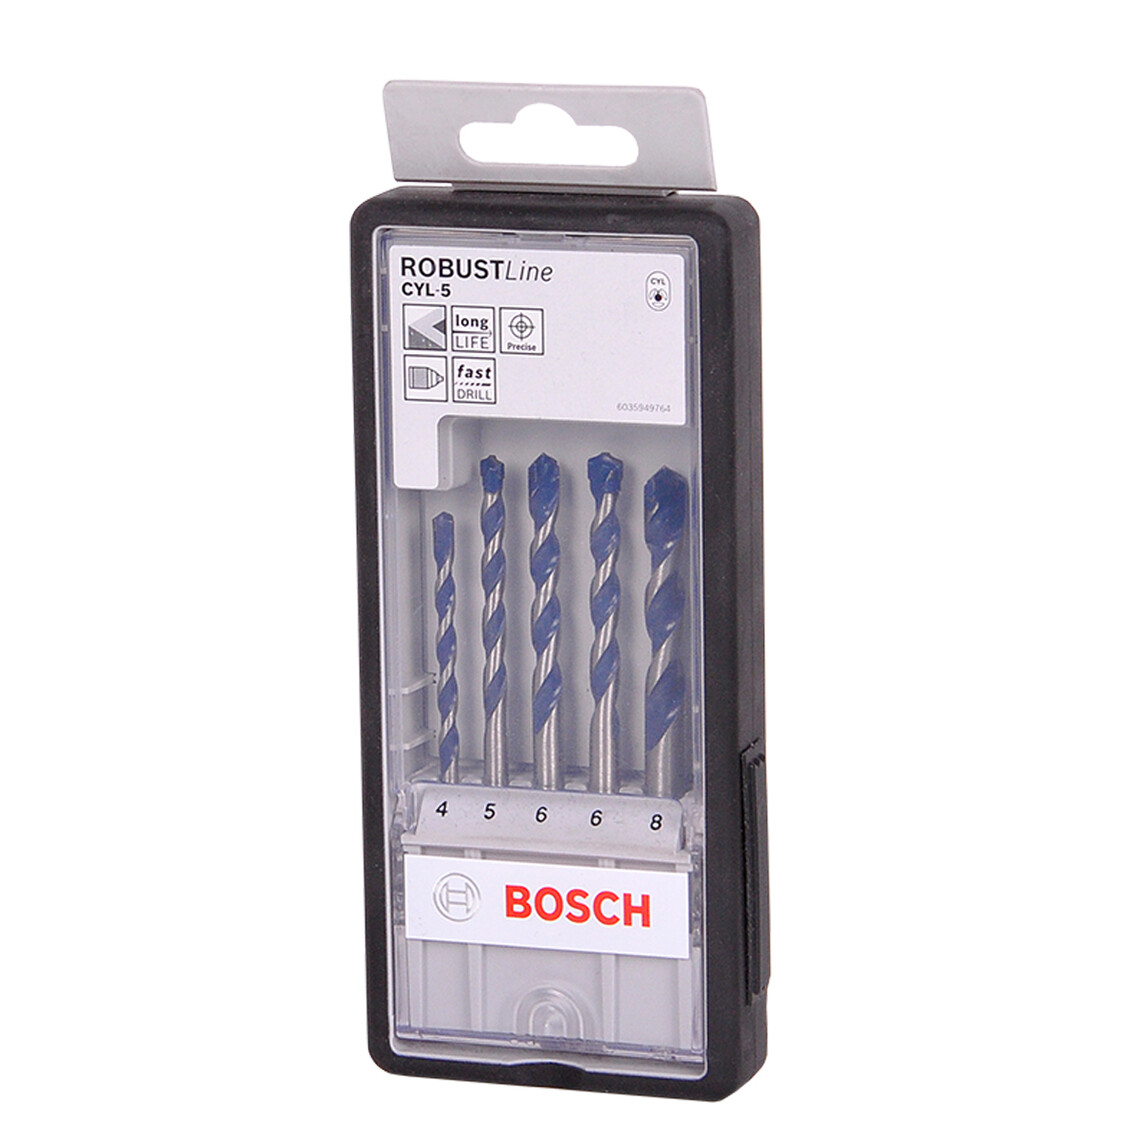    Bosch Cly-5 Beton Matkap Ucu Set 4-8 mm  